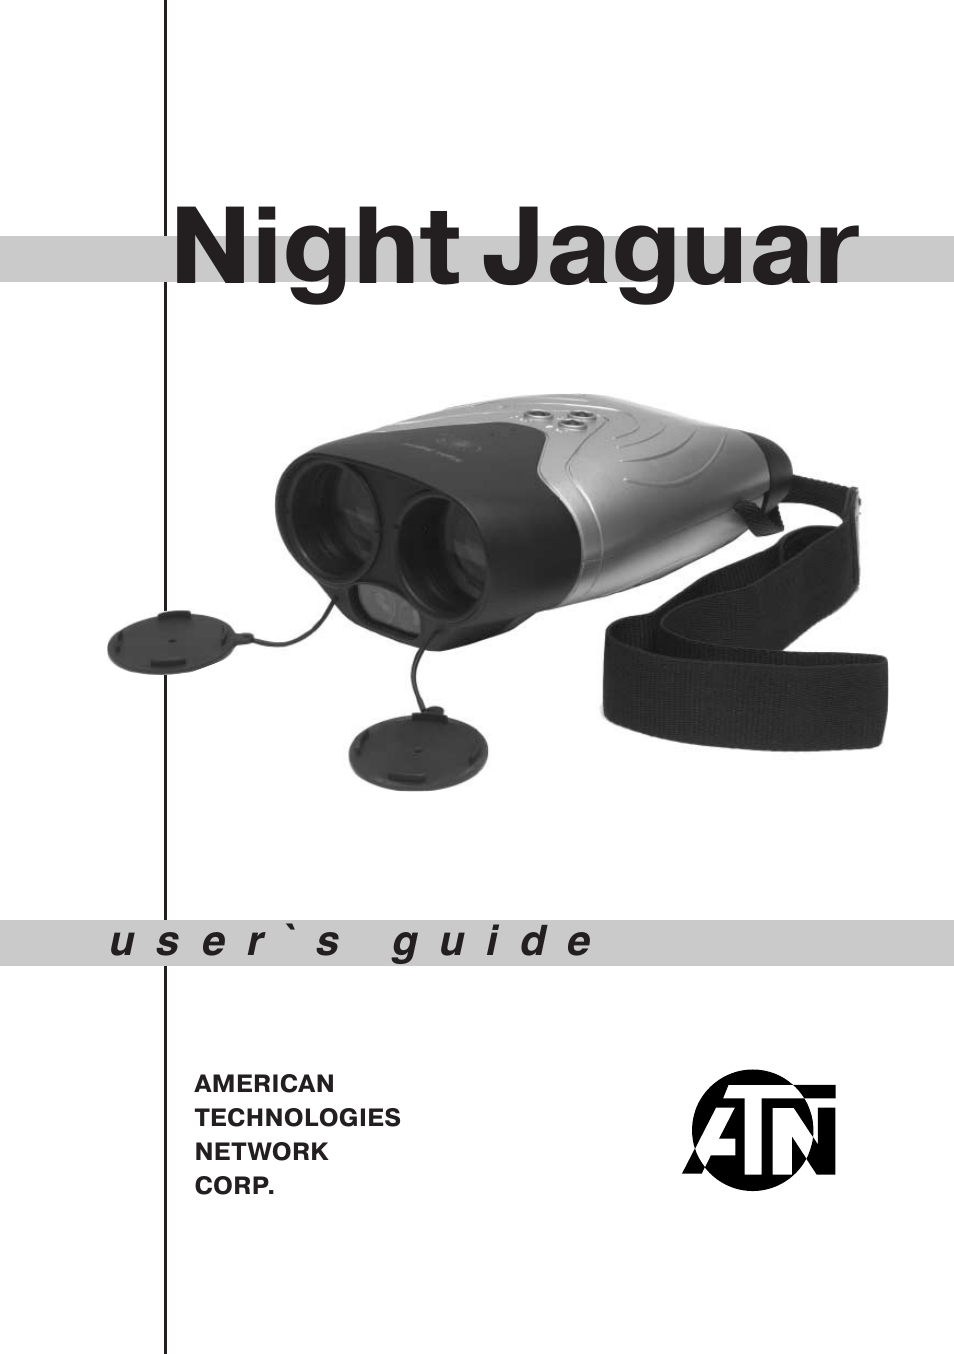 Night Jaguar Night Vision Binocular